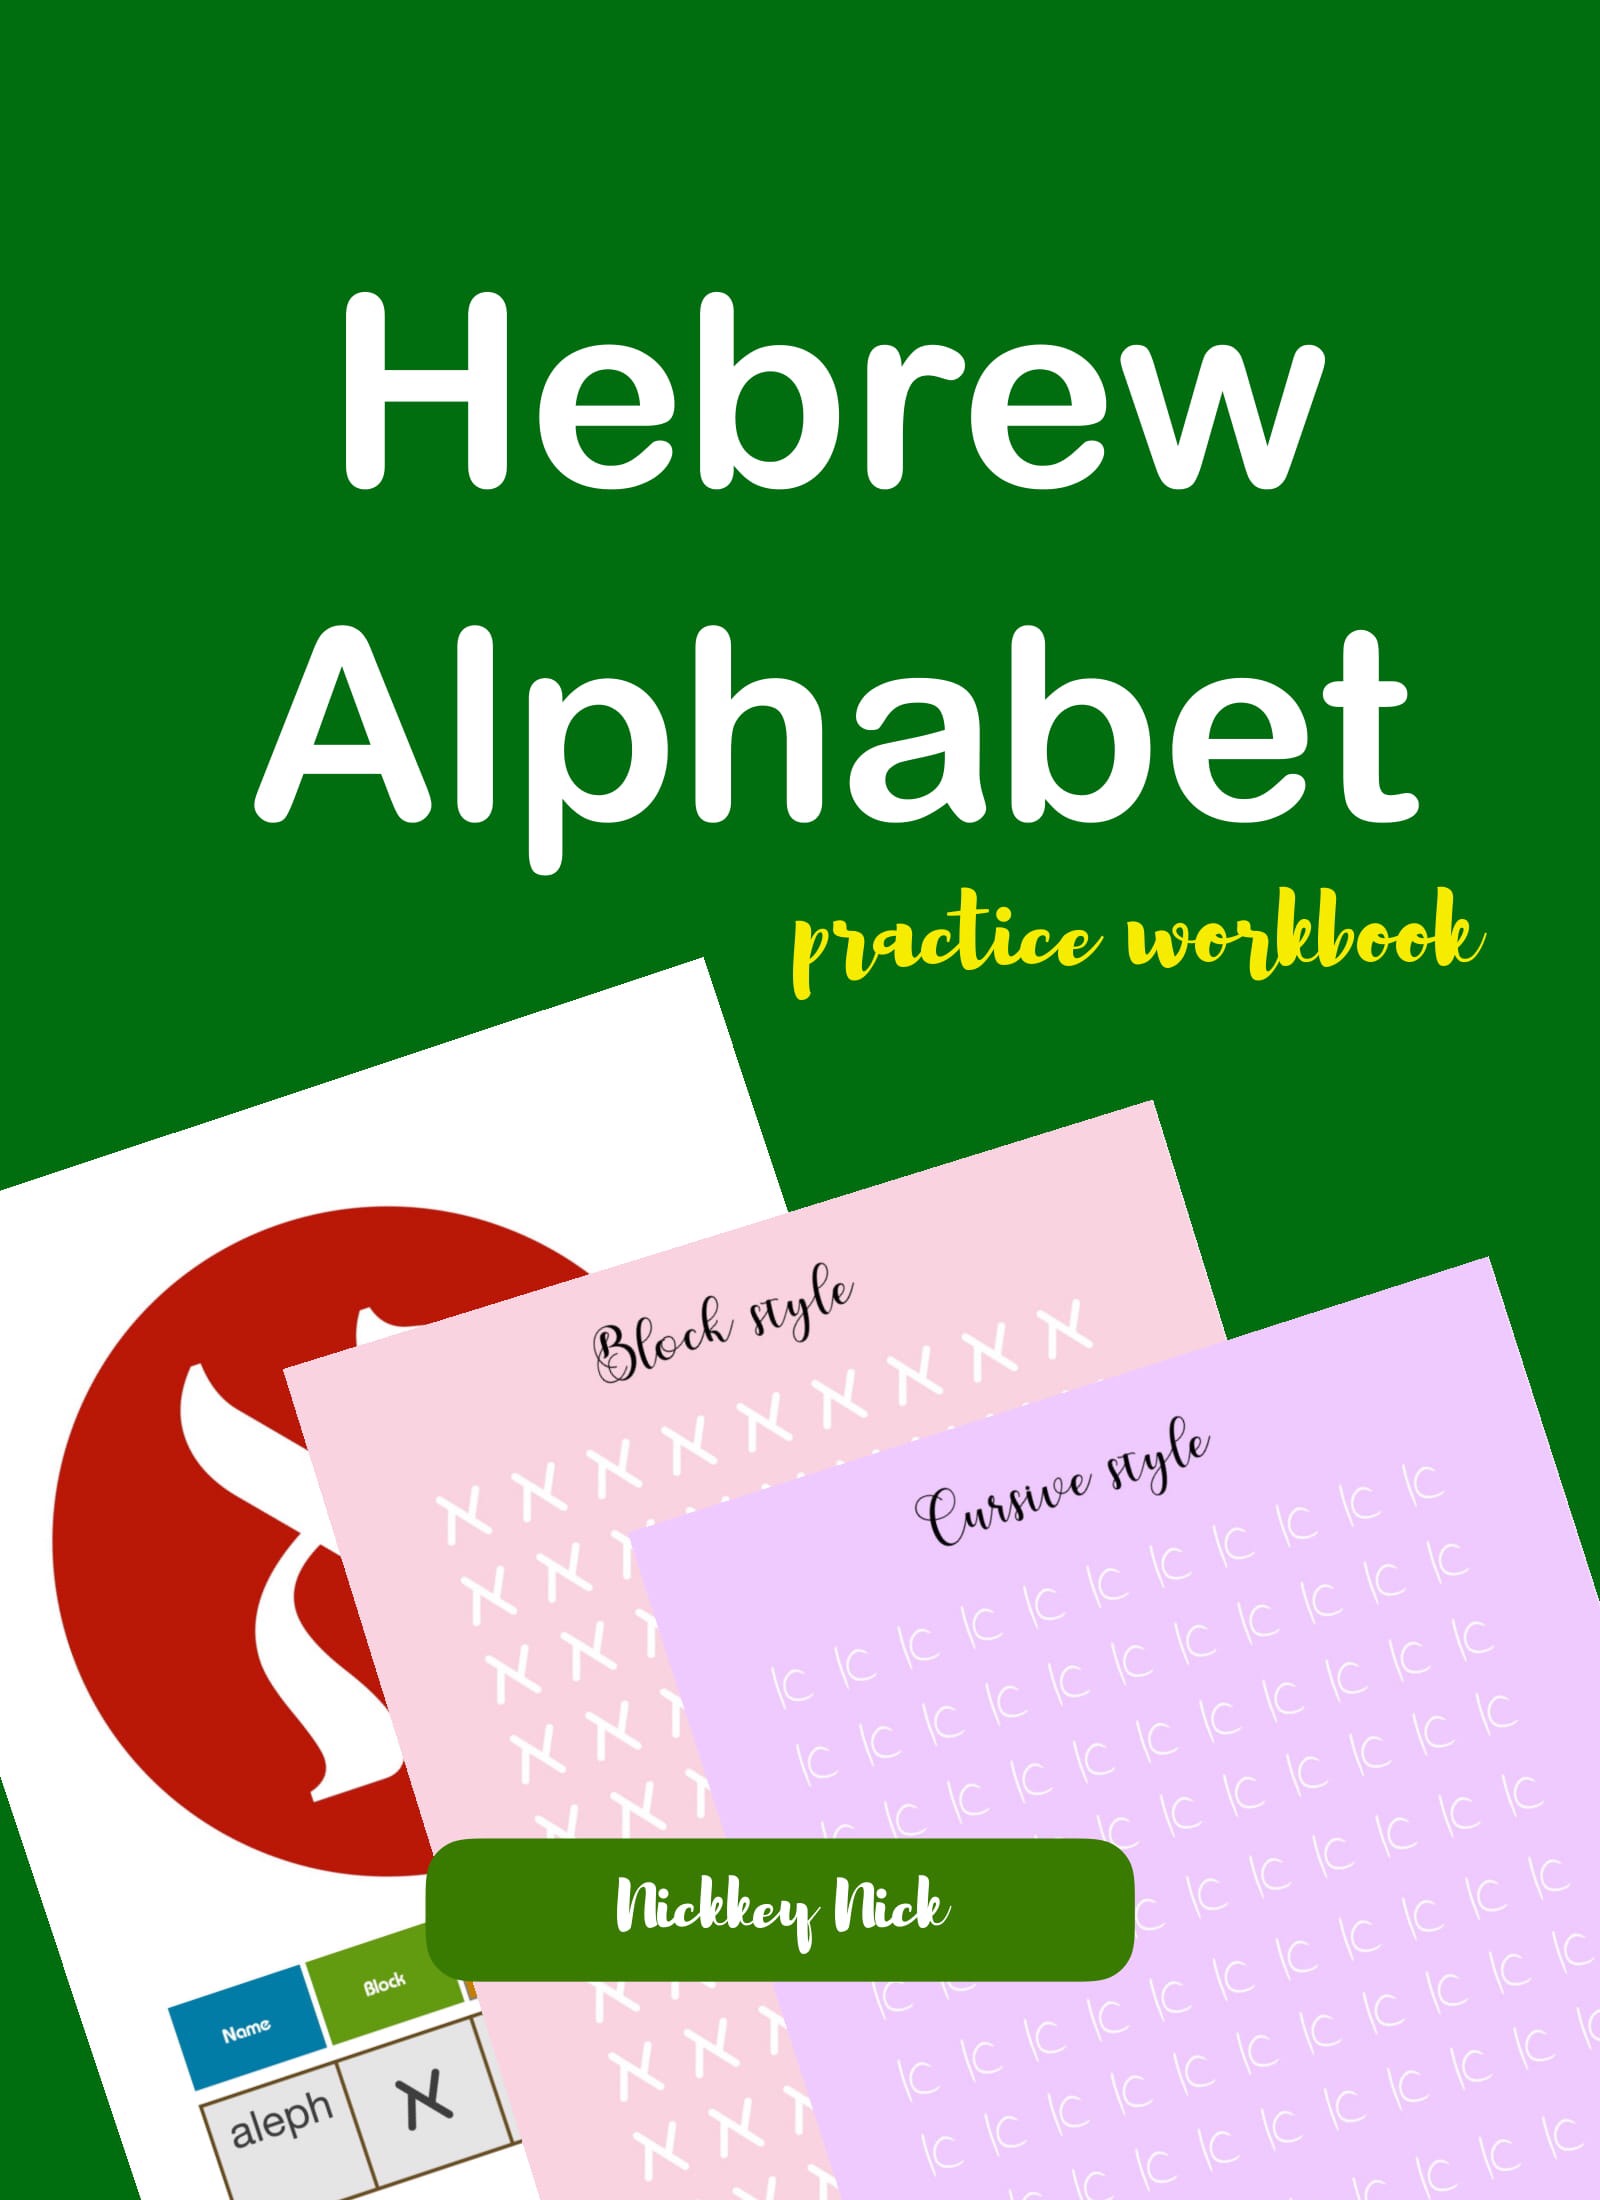 hebrew-practice-worksheets